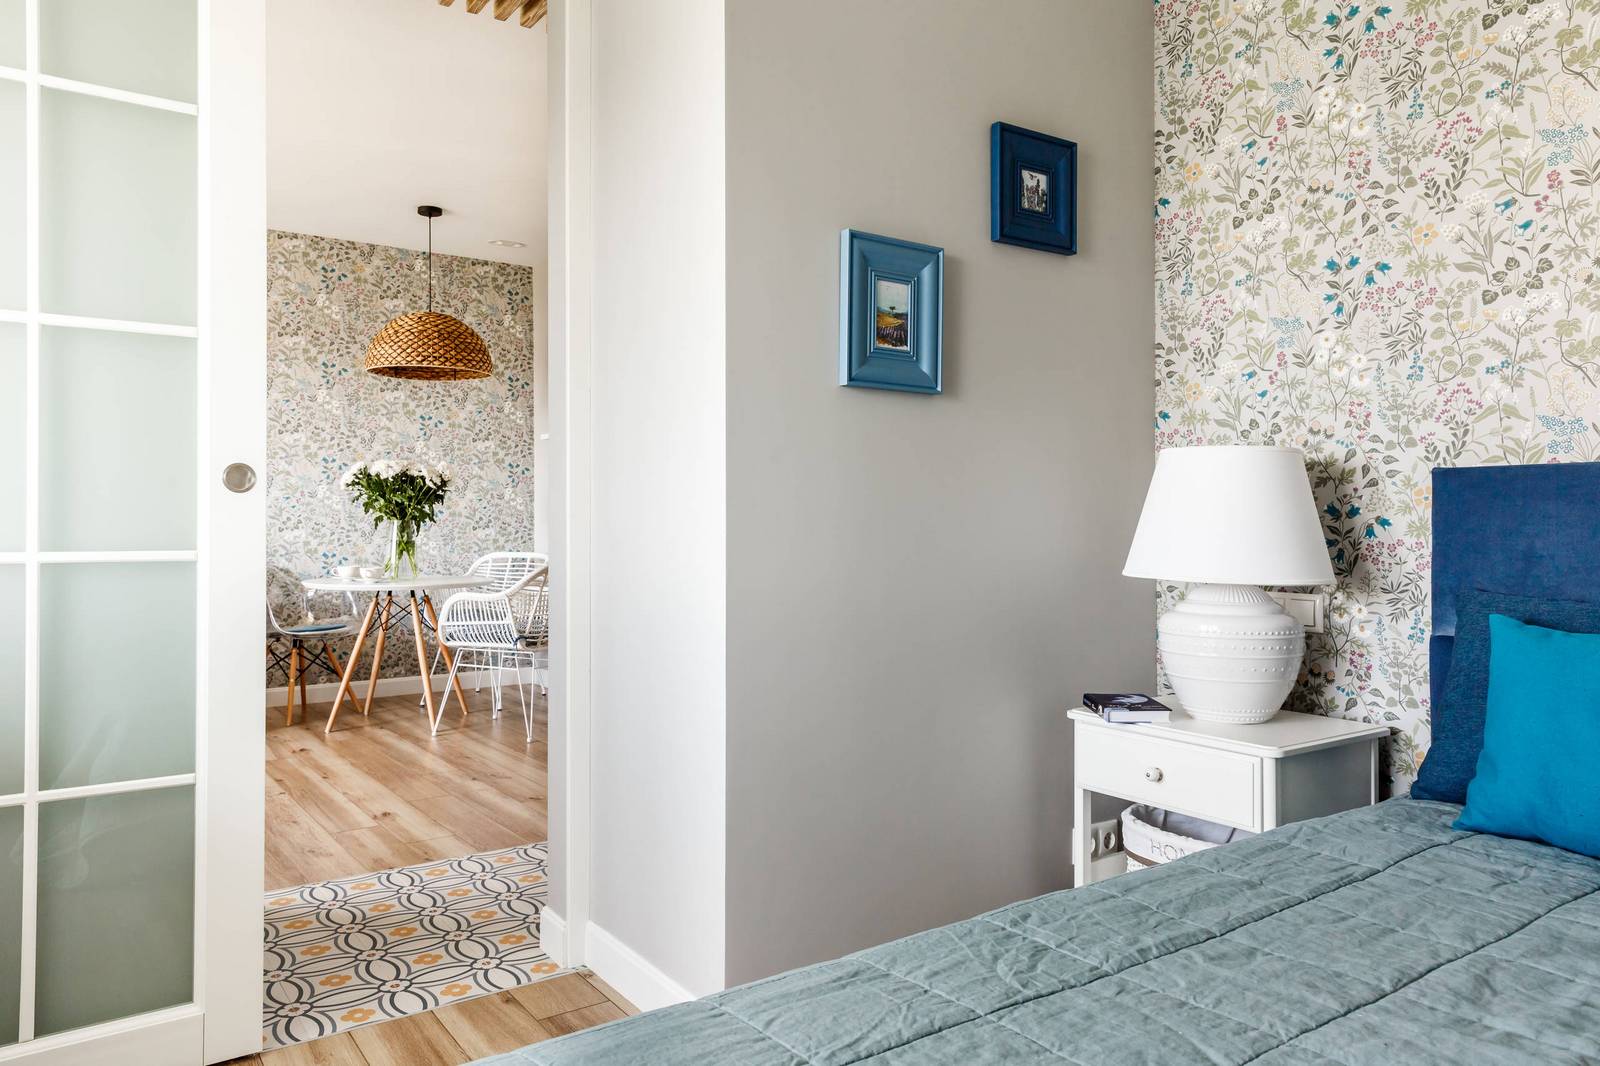 Tường phòng ngủ cũng lựa chọn màu sơn xám chủ đạo, riêng đầu giường sử dụng giấy dán tường hoa văn tương đồng phòng khách và phòng ăn để tạo sự liên kết trong căn hộ. Vài bức tranh nhỏ được treo trên tường để tạo thêm điểm nhấn.